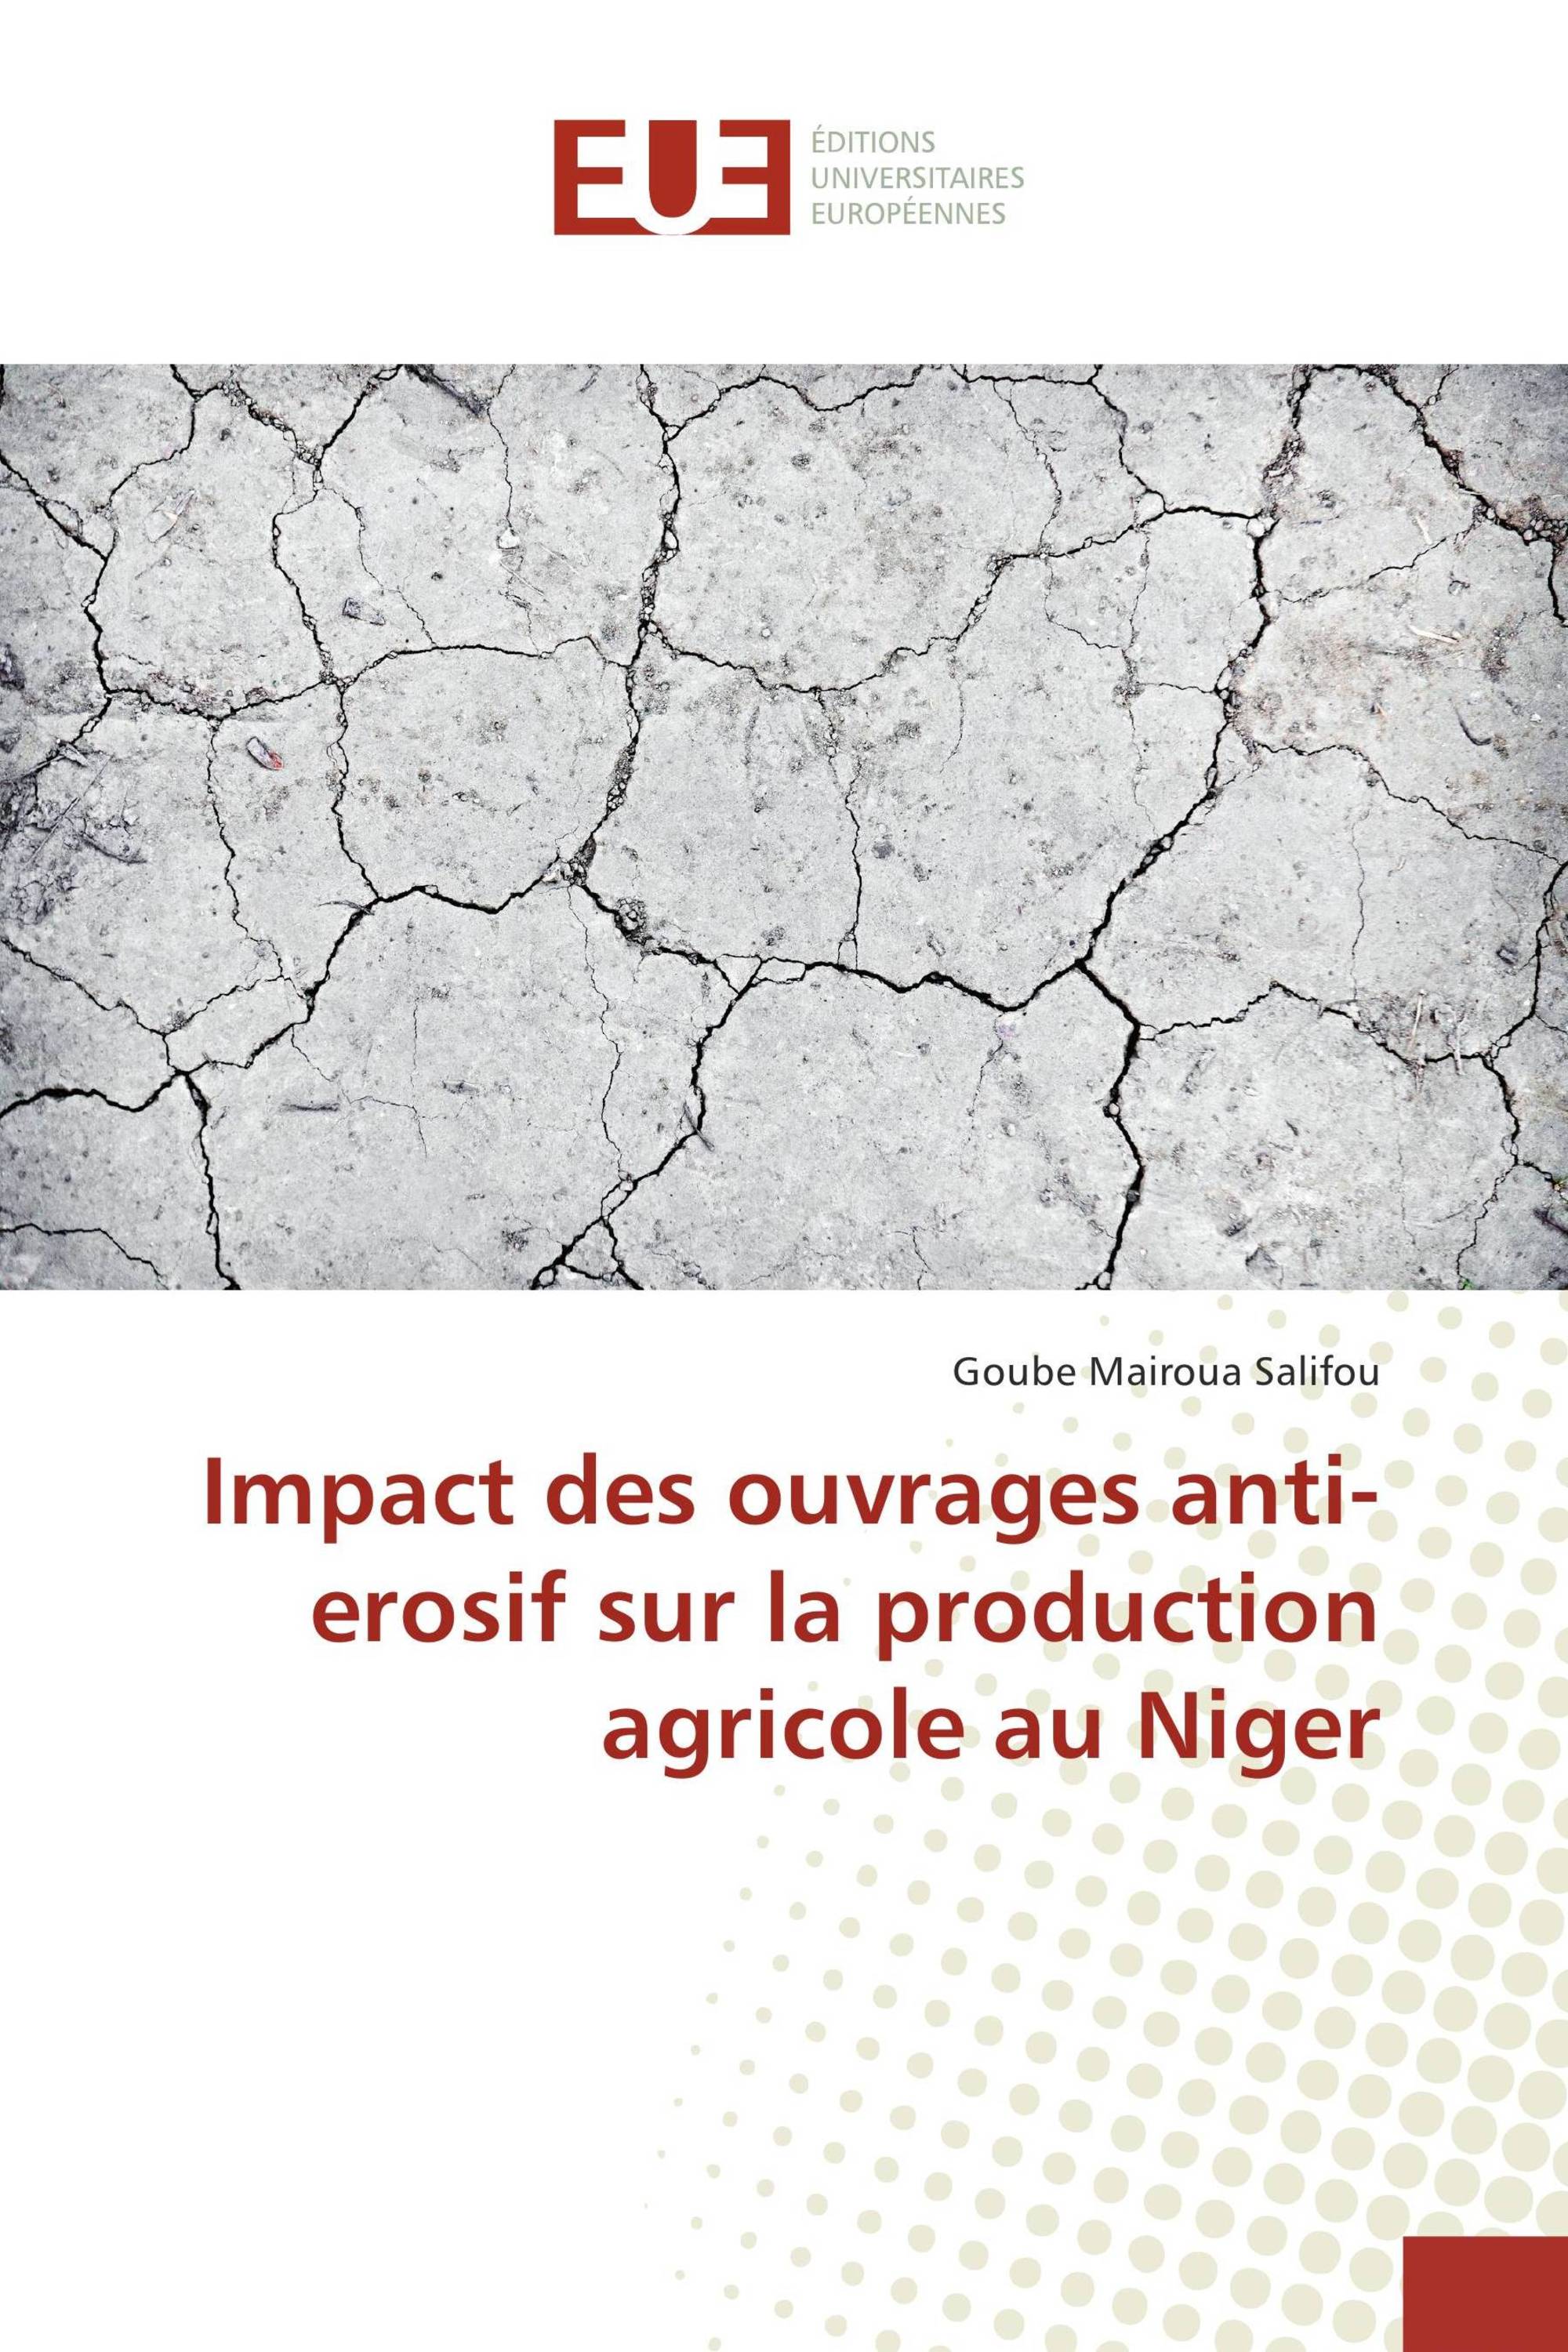 Impact des ouvrages anti-erosif sur la production agricole au Niger